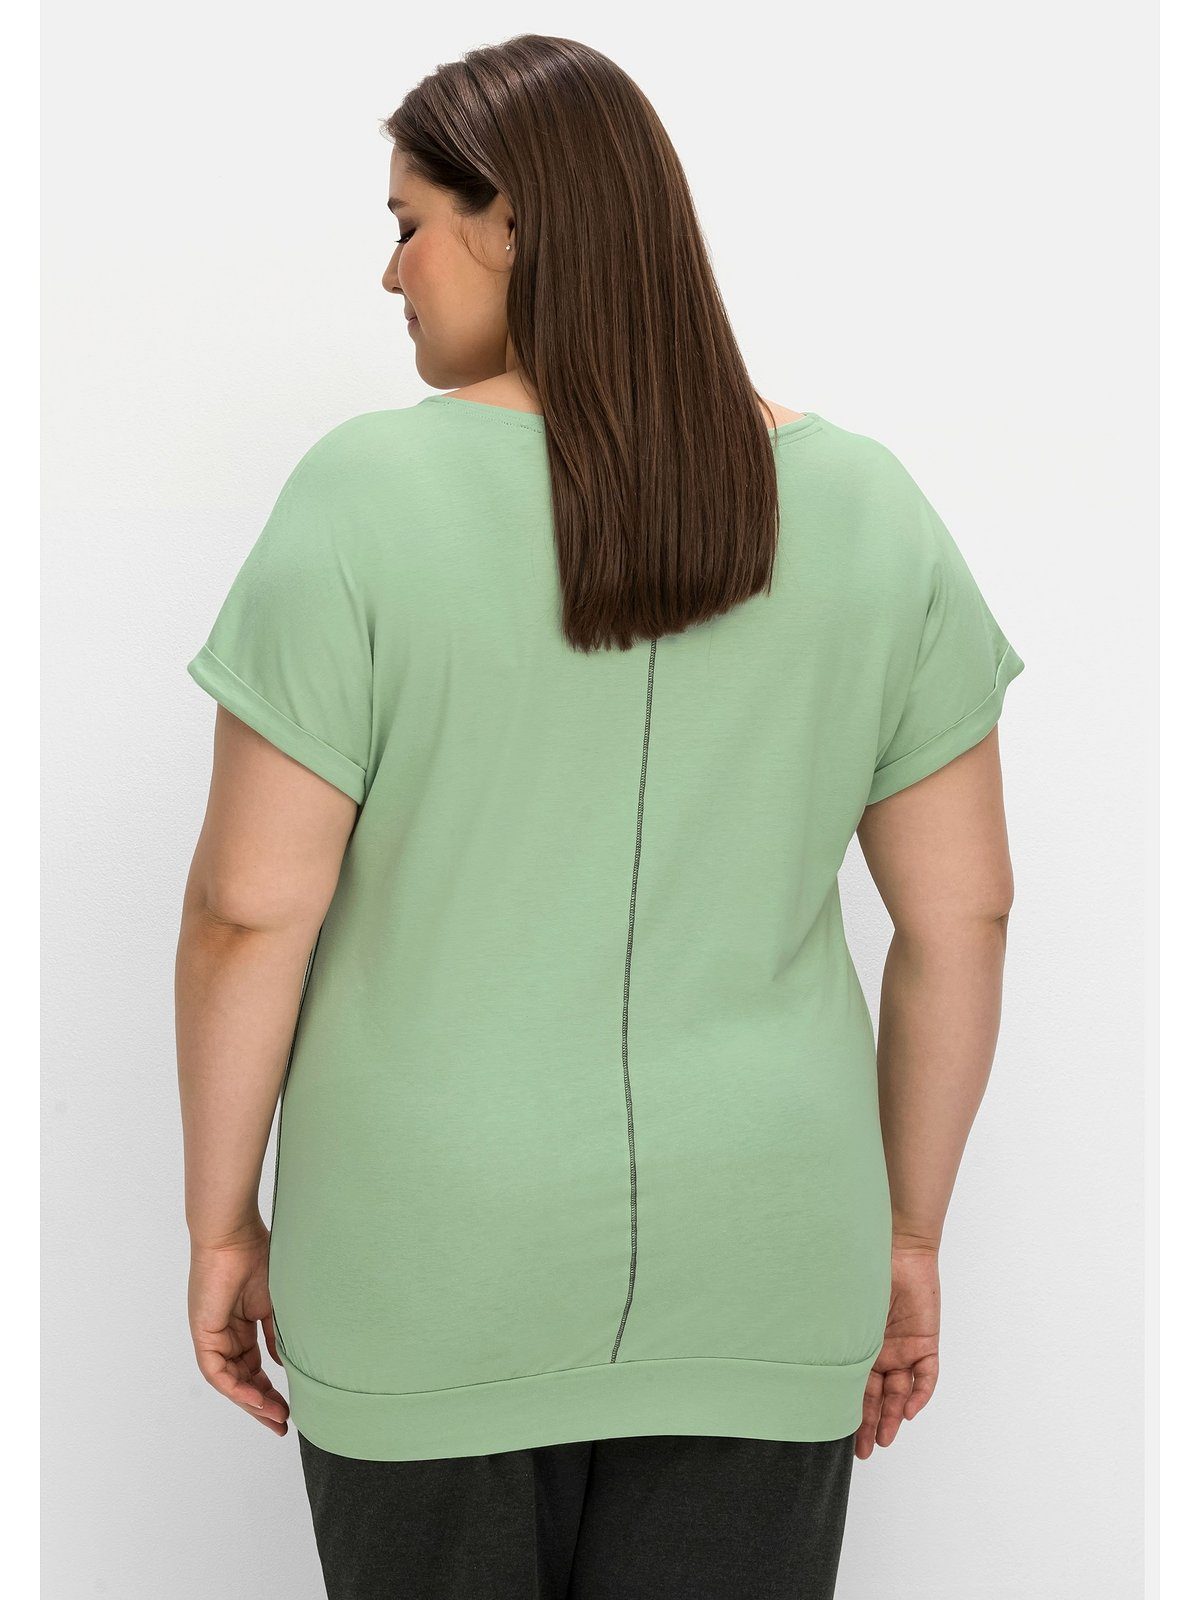 Große aus Baumwoll-Modal-Mix Sheego T-Shirt Größen